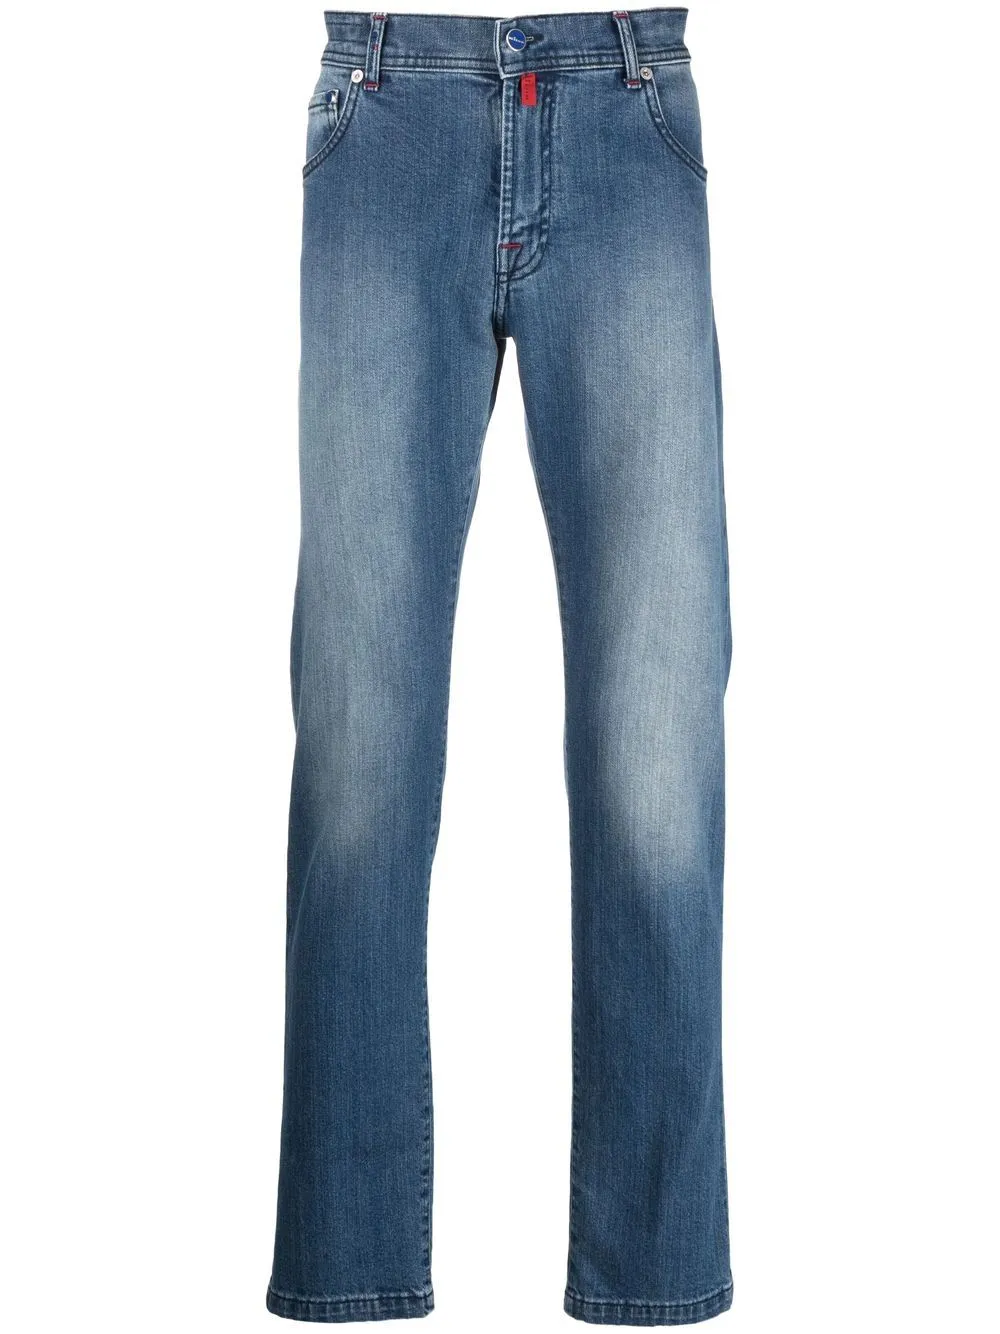 Jeans firmati da uomo Kiton jeans a gamba dritta pantaloni lunghi casual primavera autunno per uomo pantaloni in denim ammorbidente nuovo stile